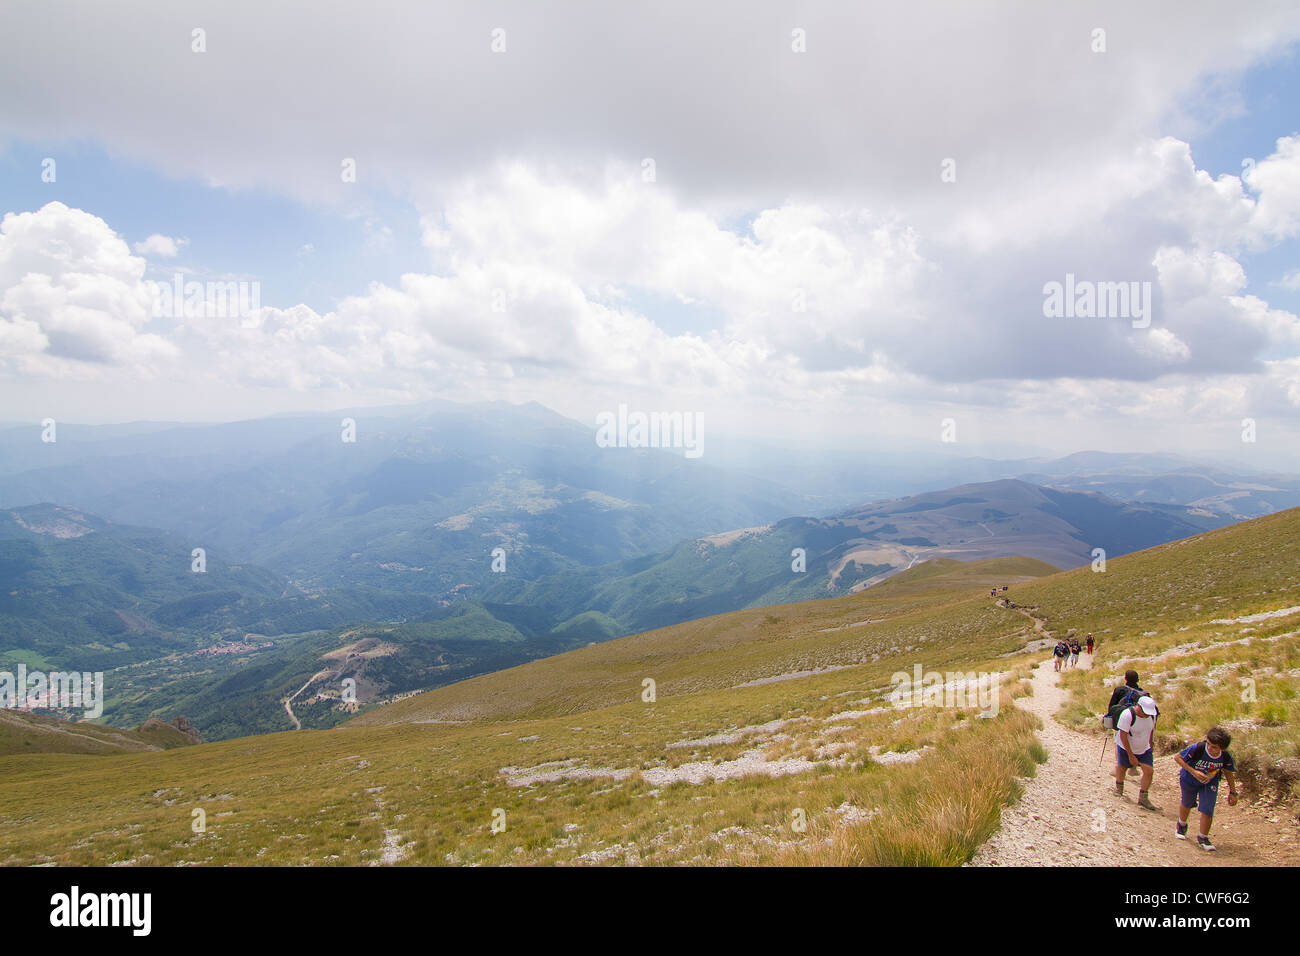 Caminante escalada Monte Vettore a una altitud de 2,478m (8,130m) en los Apeninos, Italia Foto de stock